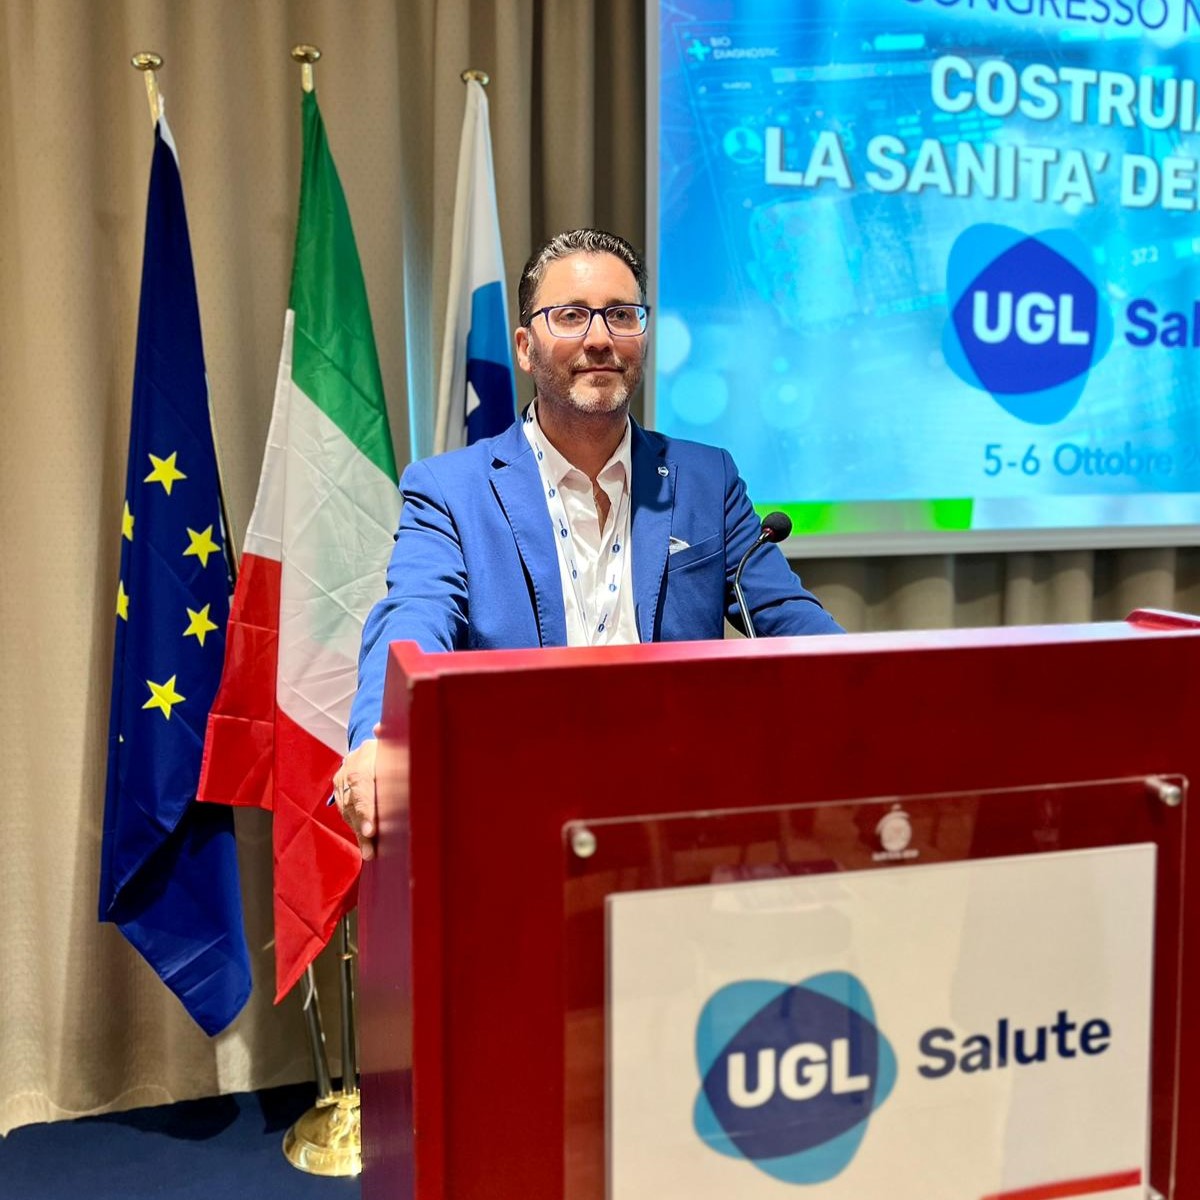 Sanità Puglia, Mesto (UGL): “Firmata intesa per applicazione CCNL Universo Salute di Foggia e Bisceglie